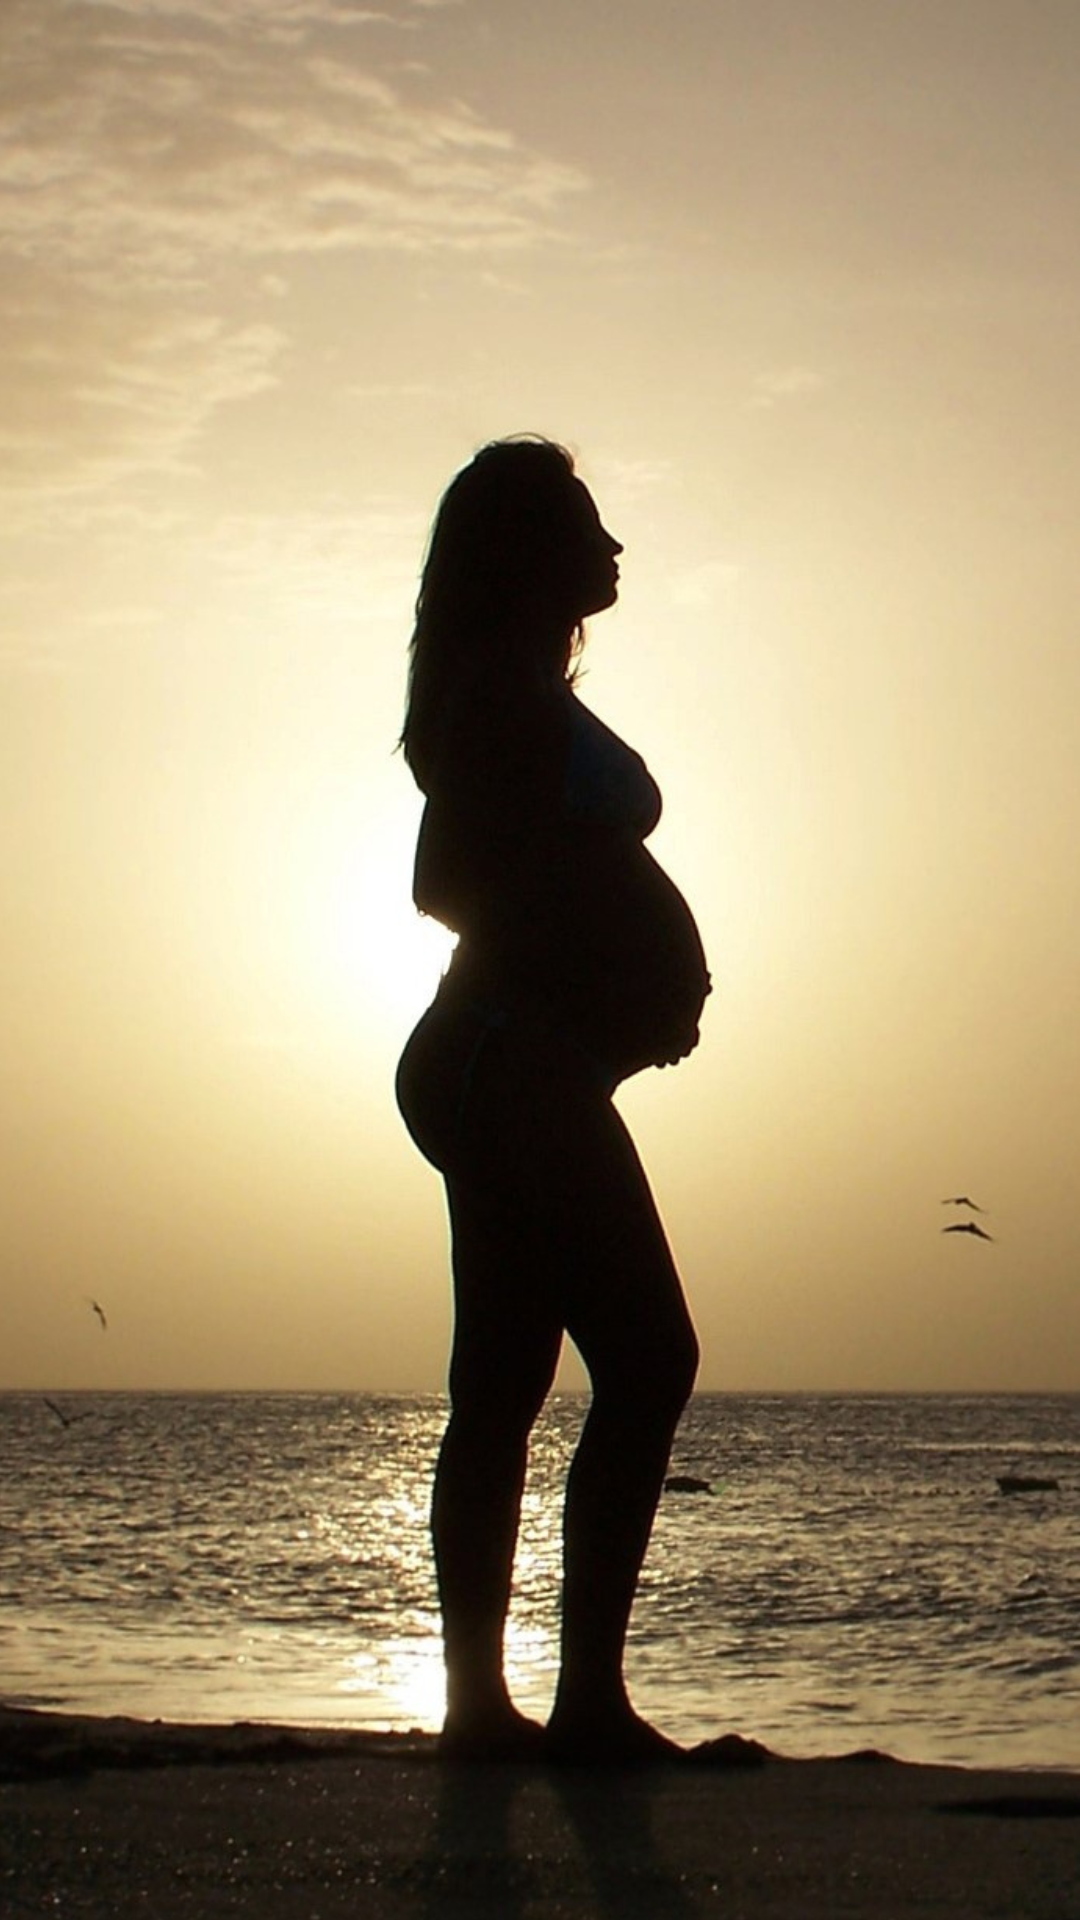 Photo d'une femme enceinte sur la plage au soleil couchant, si bien qu'elle apparait en silhouette noire, la mer et le ciel en arrière plan, avec des oiseaux. Elle tient son ventre et a la tête haute. Cette photo est là pour illustrer mon invitée, Amandine, qui a souhaité rester anonyme, est enceinte actuellement (de 5 mois lors de l'enregistrement) et vit à Marseille, d'où la plage. 